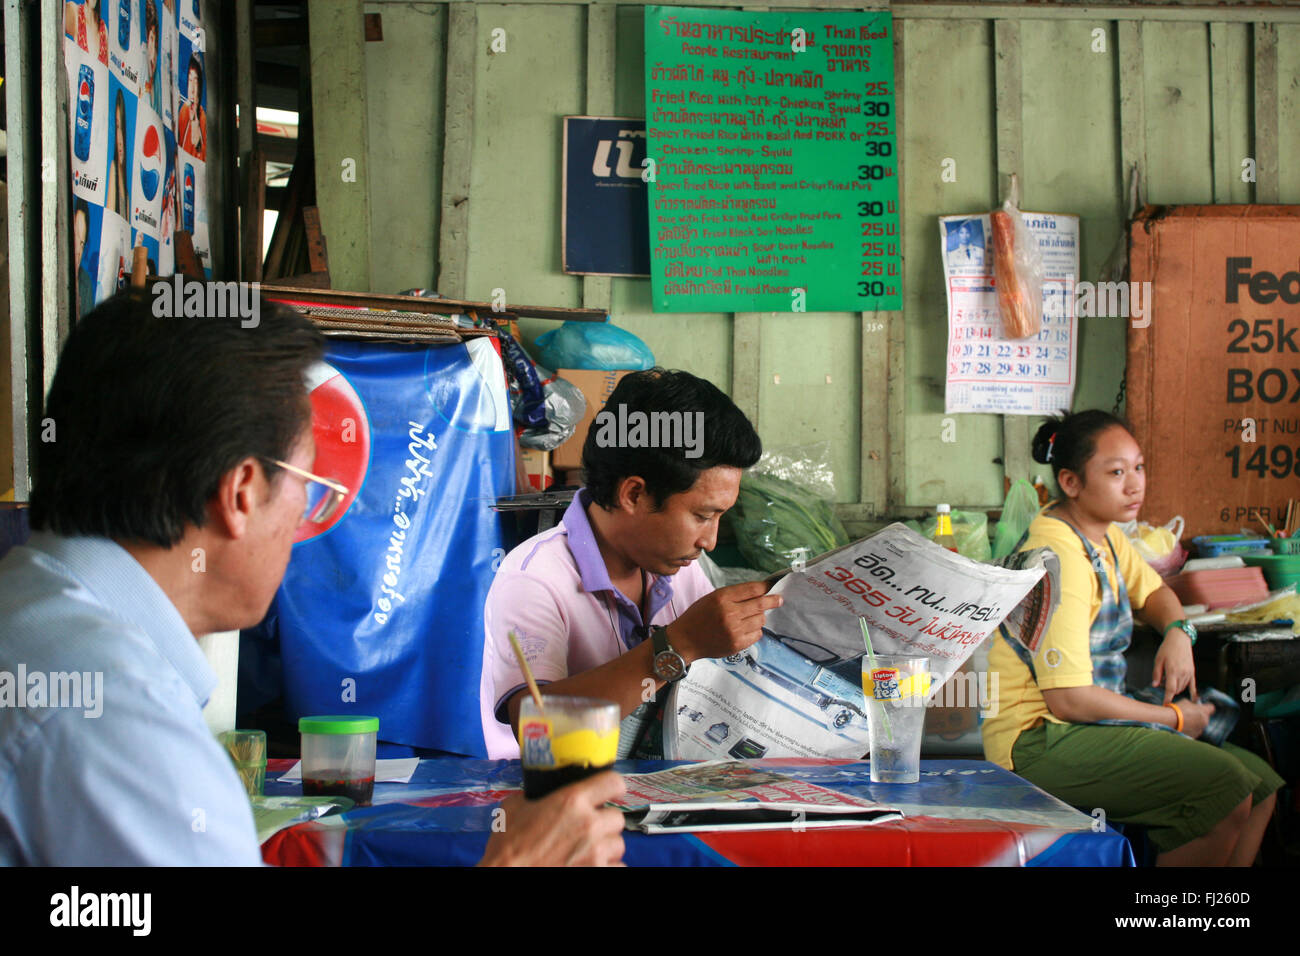 Streetlife in Bangkok - reading man Stock Photo